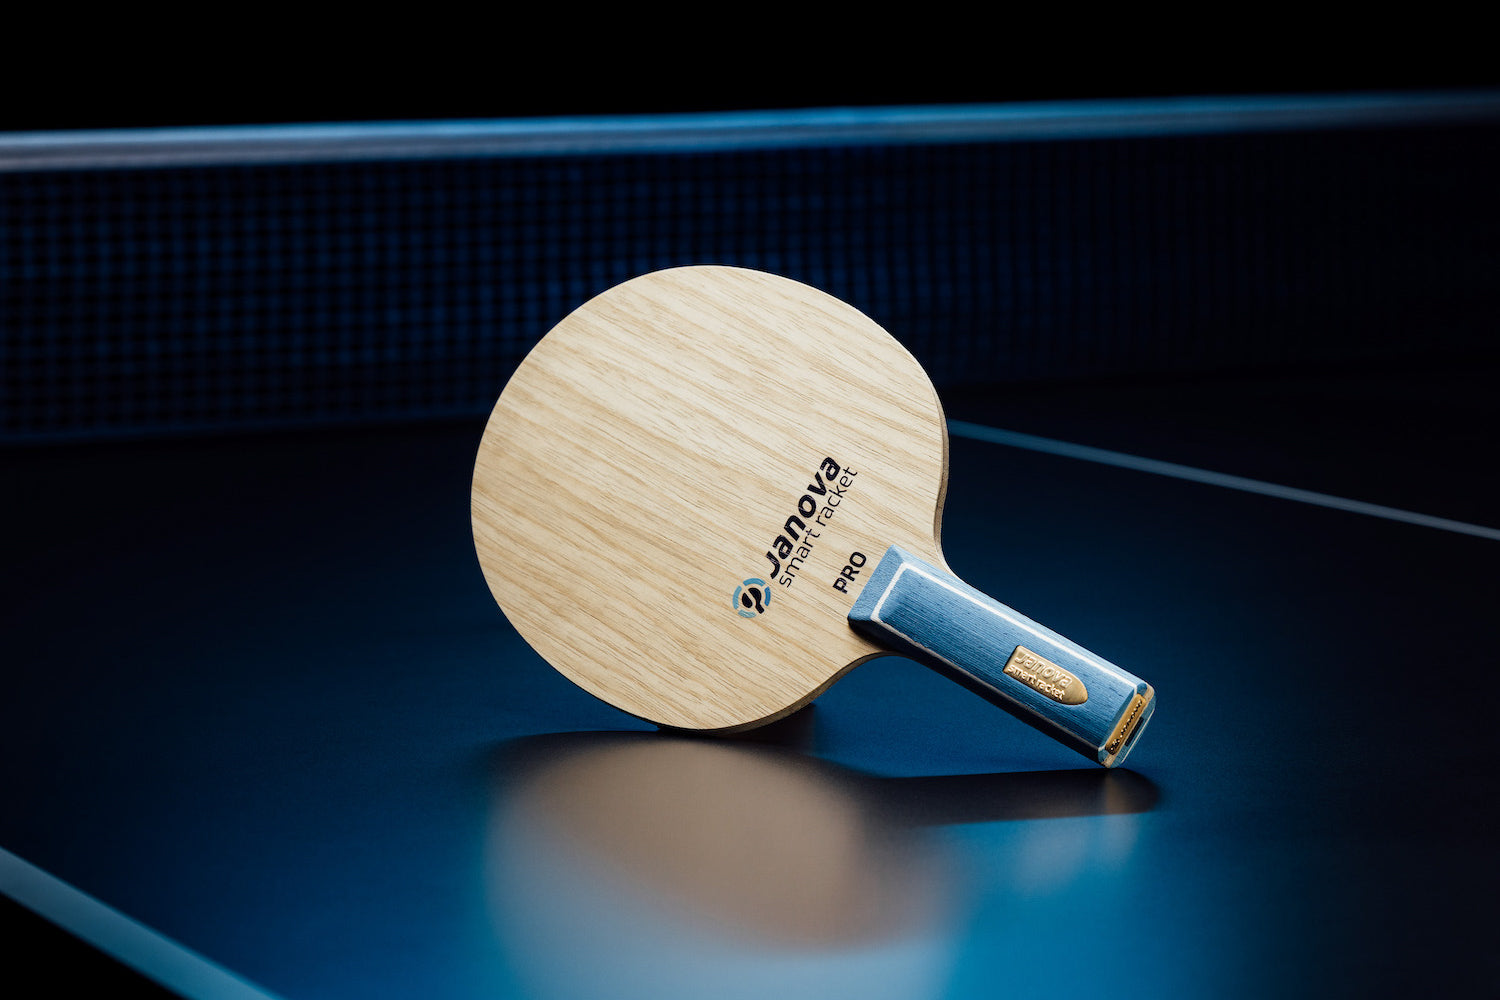 Stehender Smart Racket - PRO Tischtennisschläger mit geradem Griff, Janova Sensor, USB-C-Buchse auf Tischtennistisch